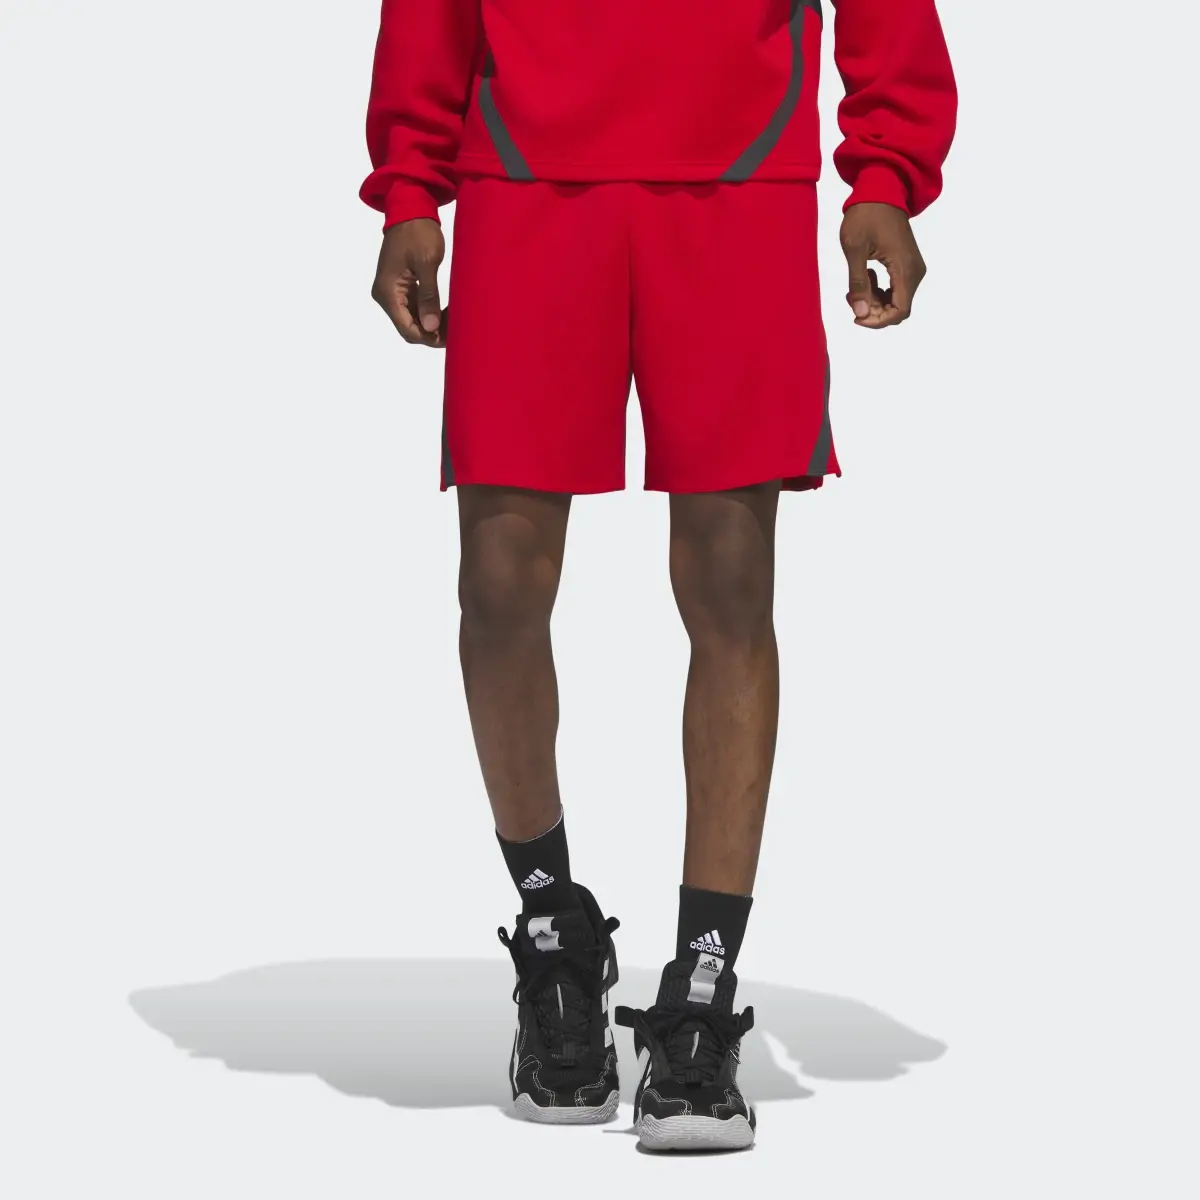 Adidas Select Shorts. 1